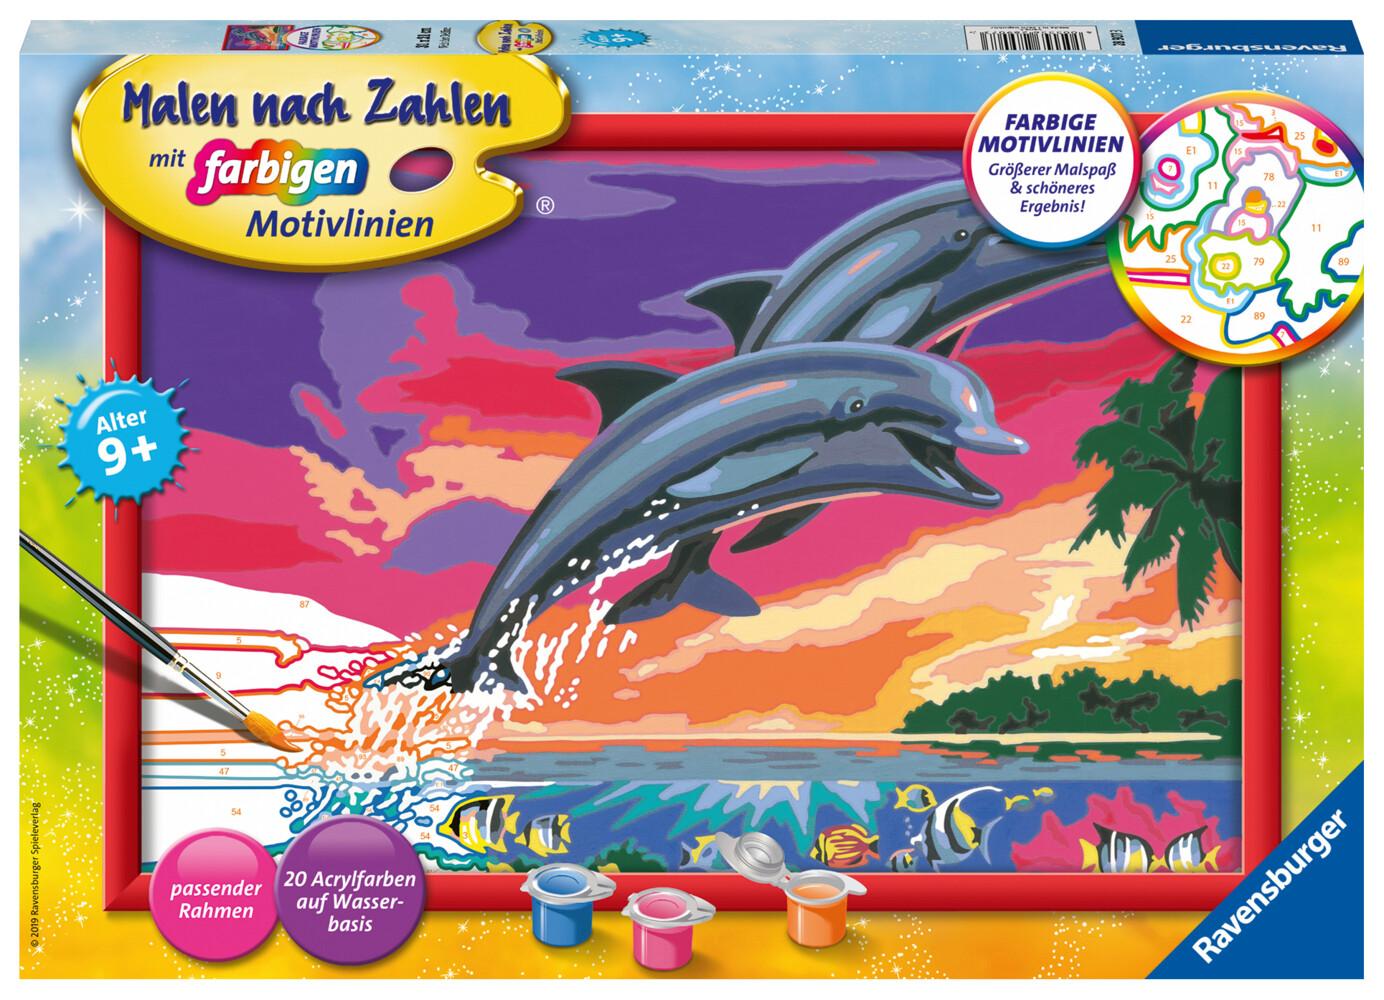 Ravensburger - Malen nach Zahlen - Welt der Delfine